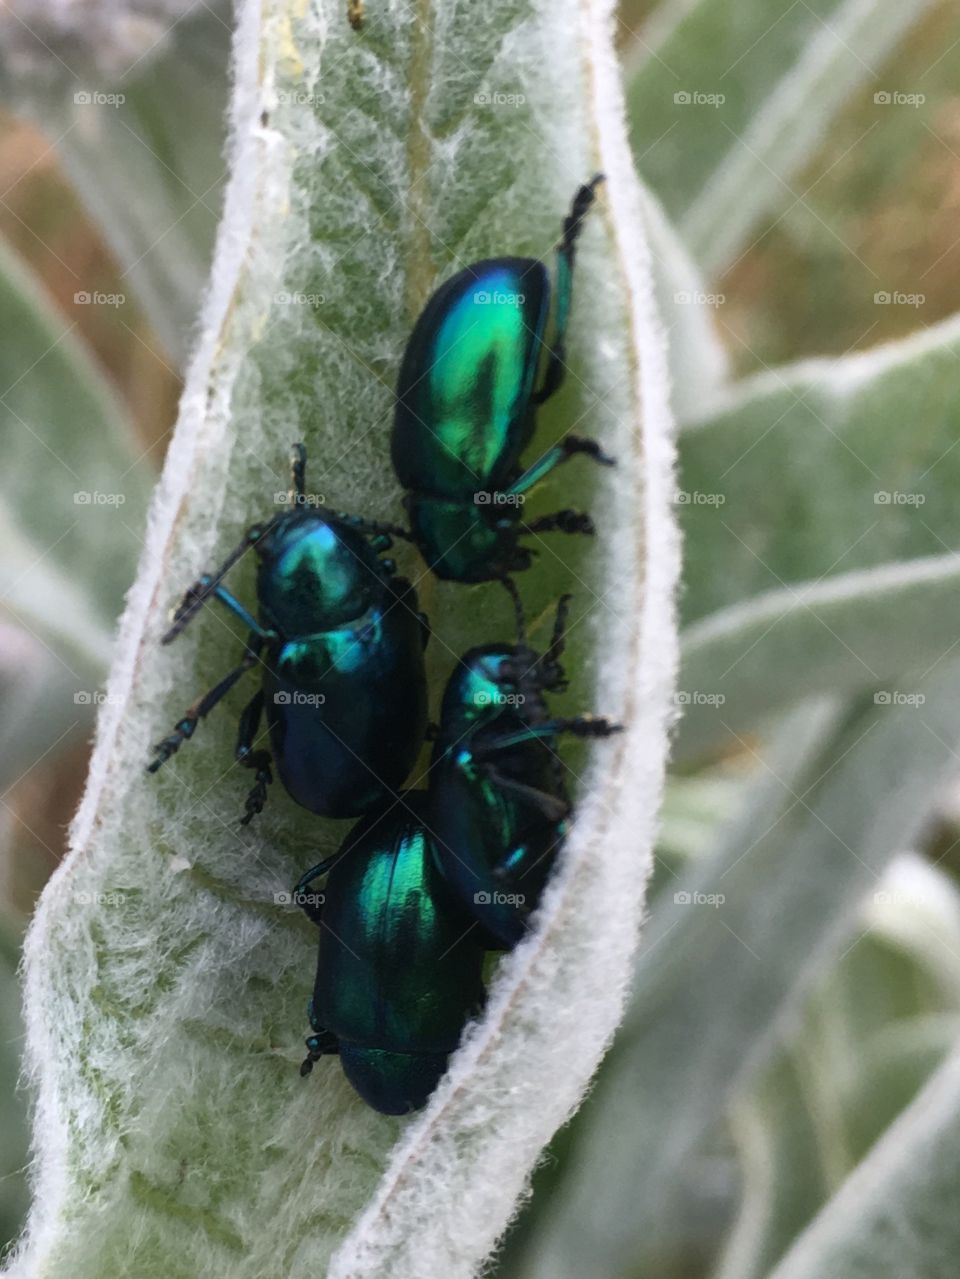 Beetles 🐜 